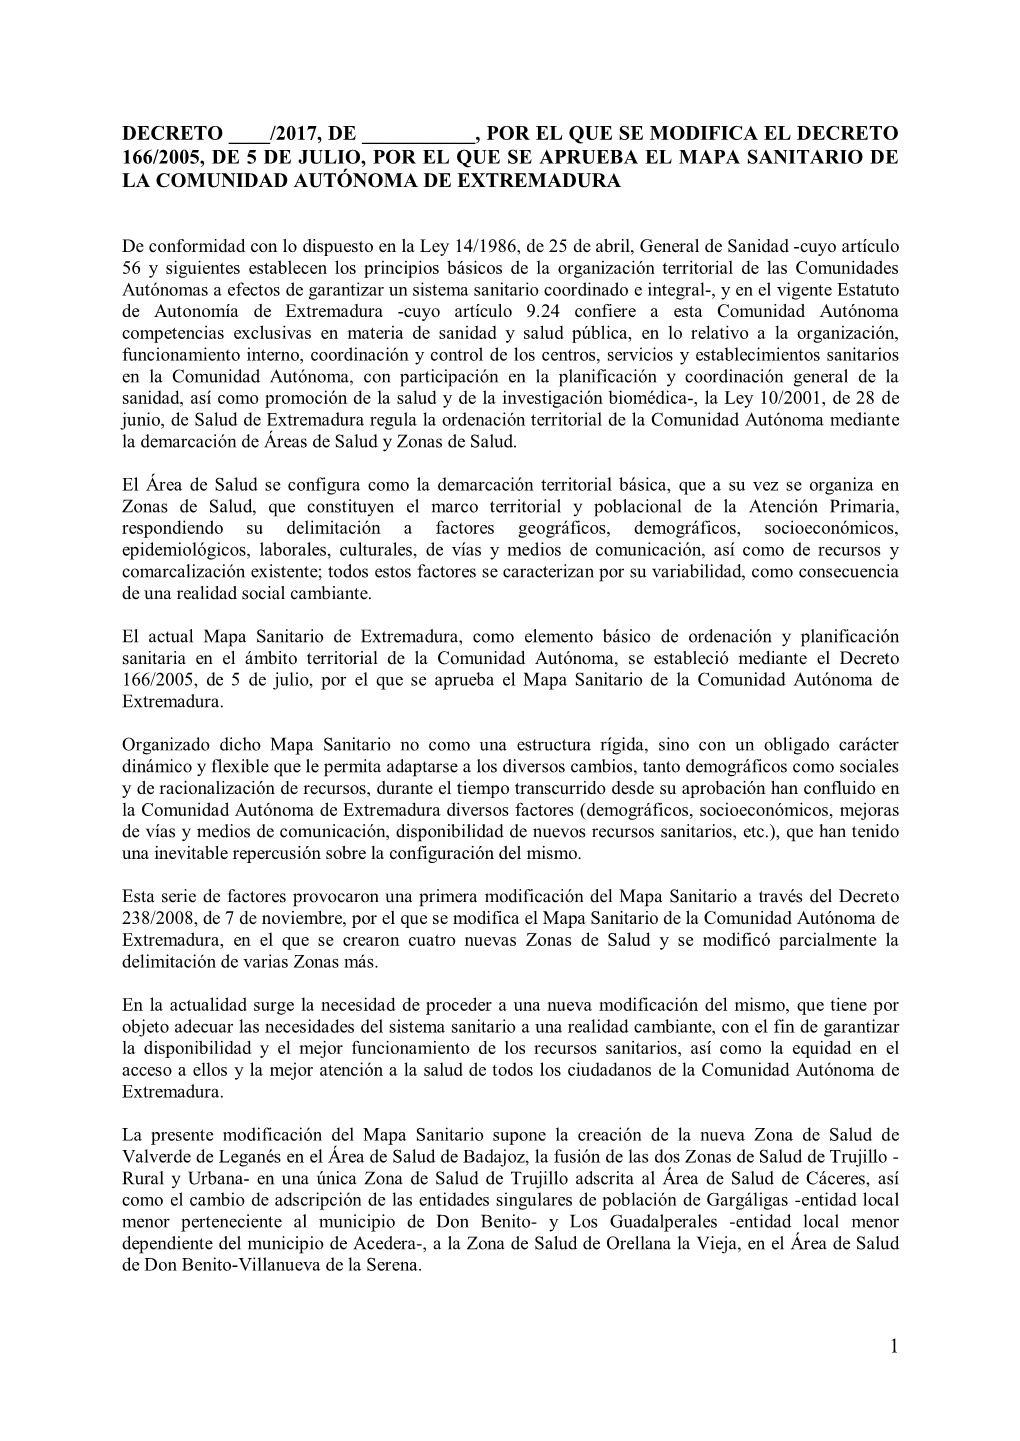 2017, De ______, Por El Que Se Modifica El Decreto 166/2005, De 5 De Julio, Por El Que Se Aprueba El Mapa Sanitario De La Comunidad Autónoma De Extremadura